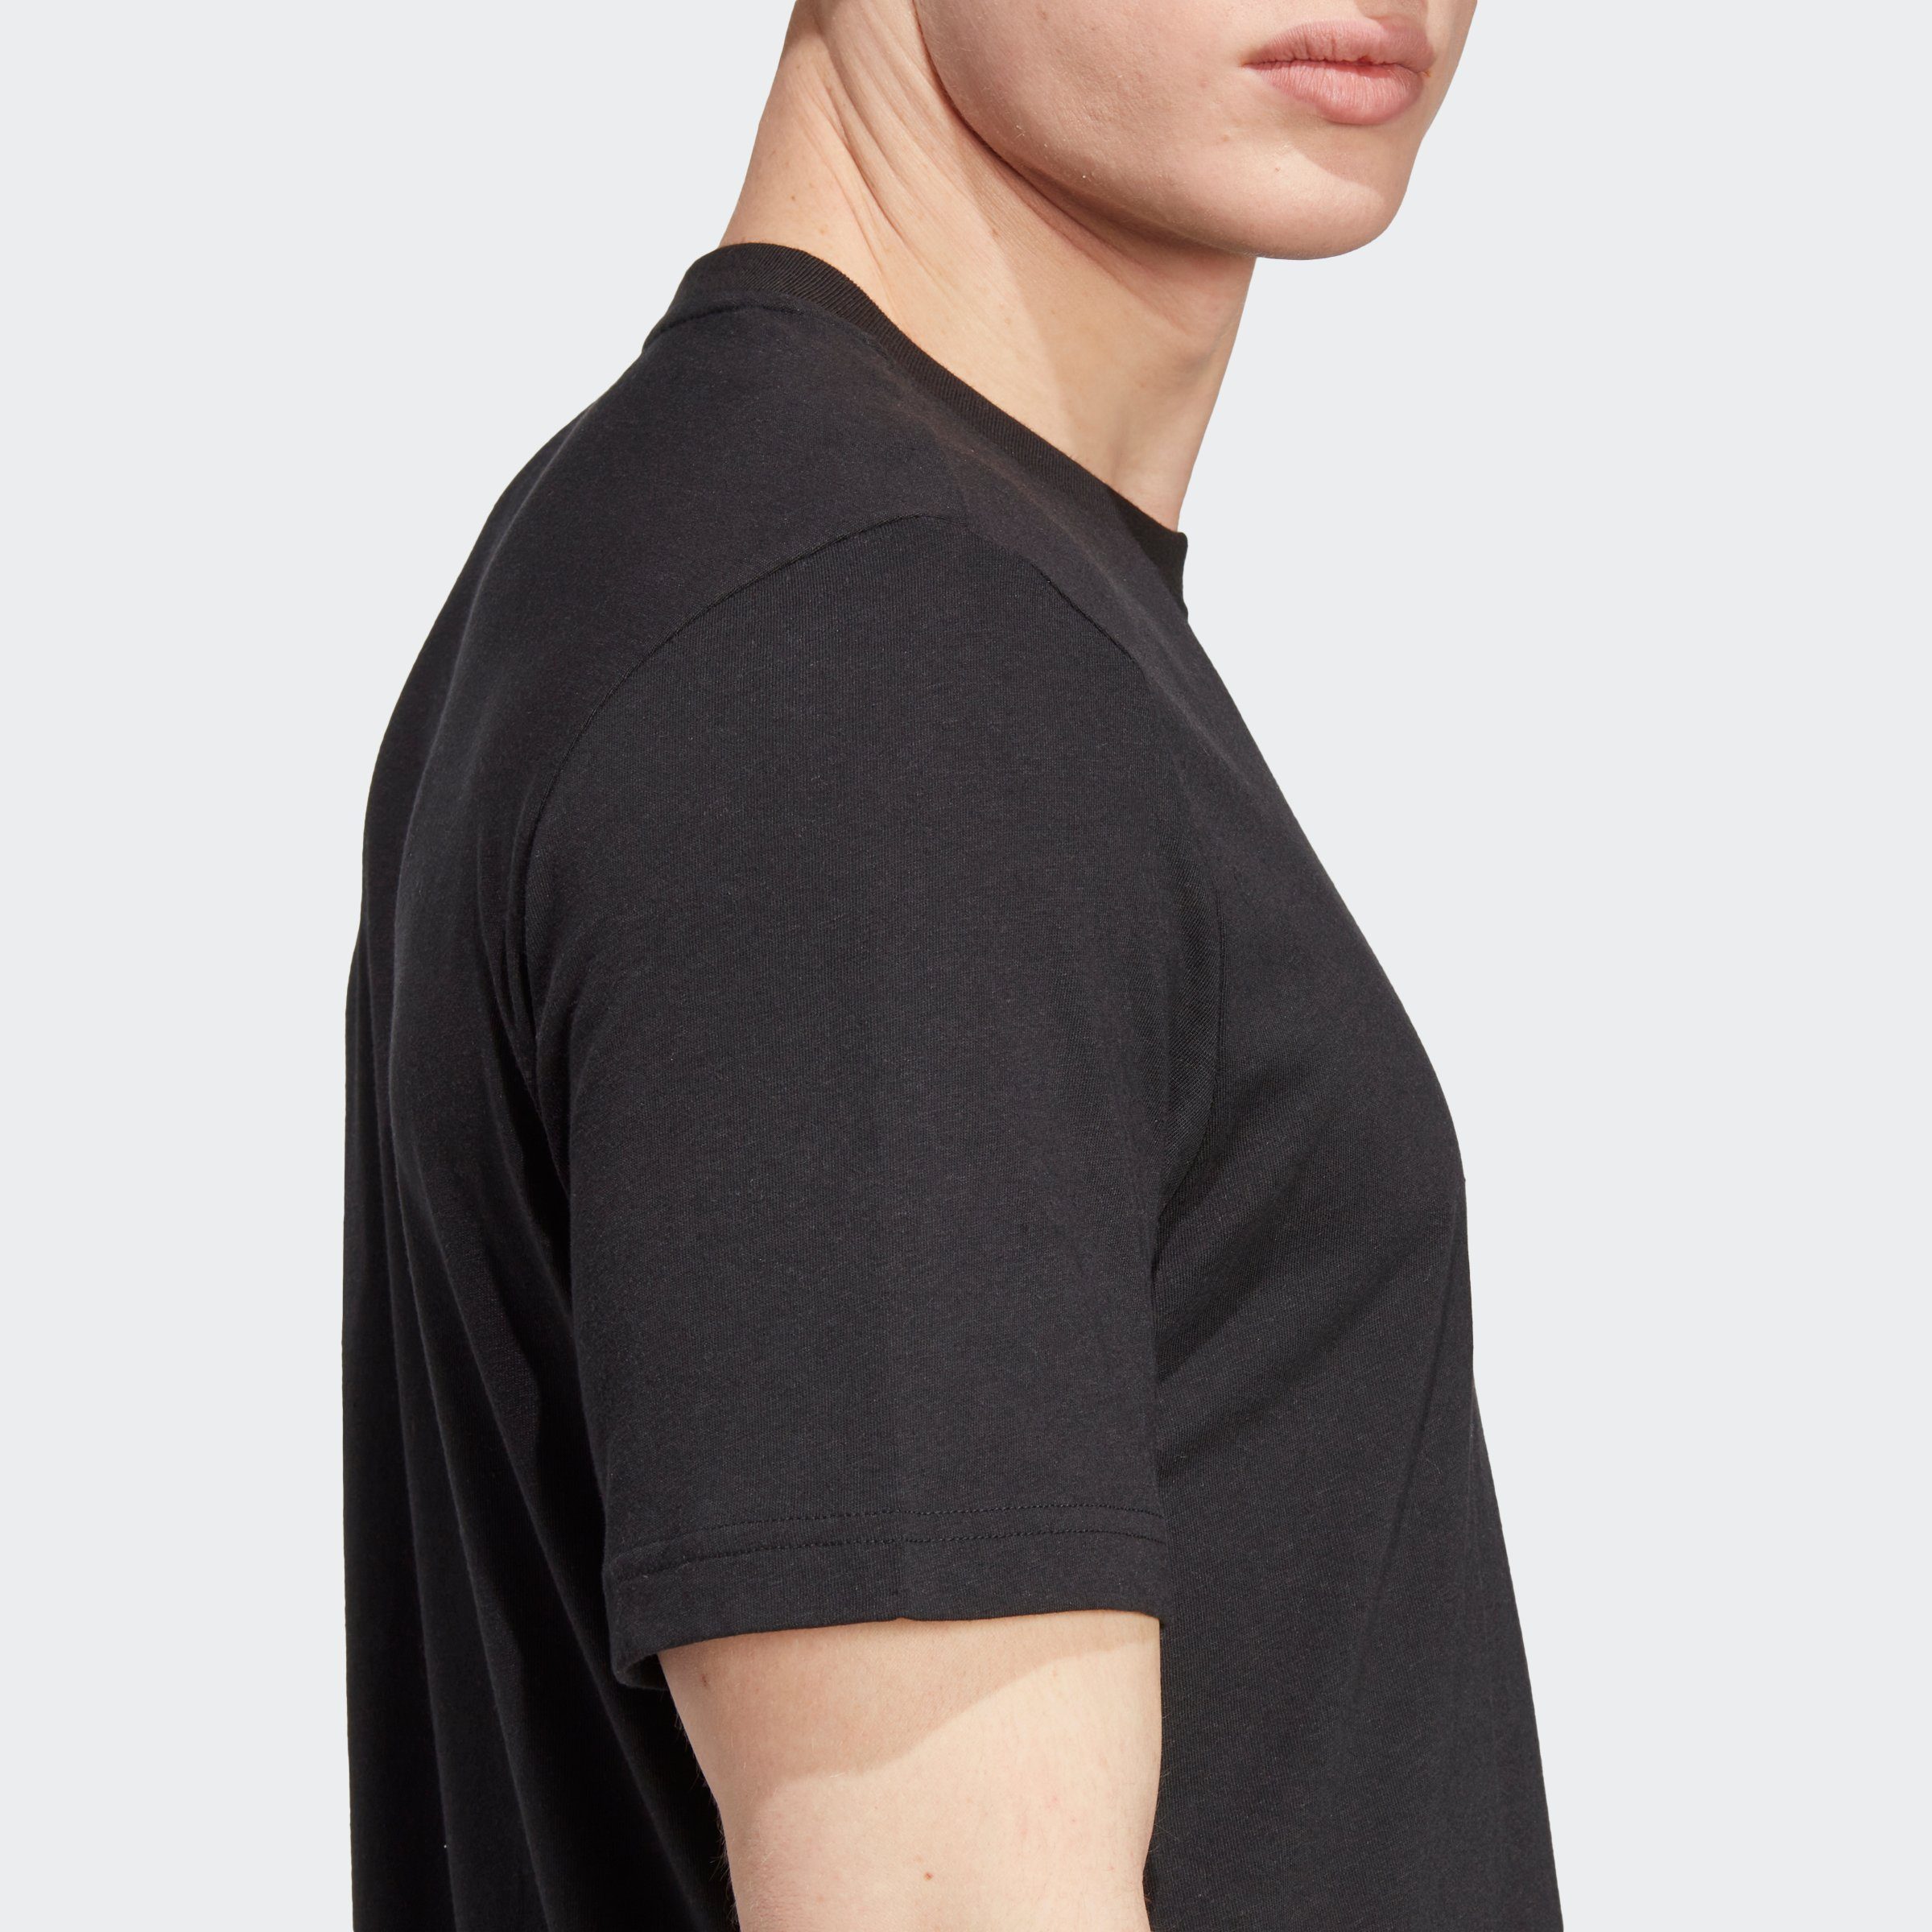 Black T-Shirt adidas Originals HEMP WITH ESSENTIALS+ MADE